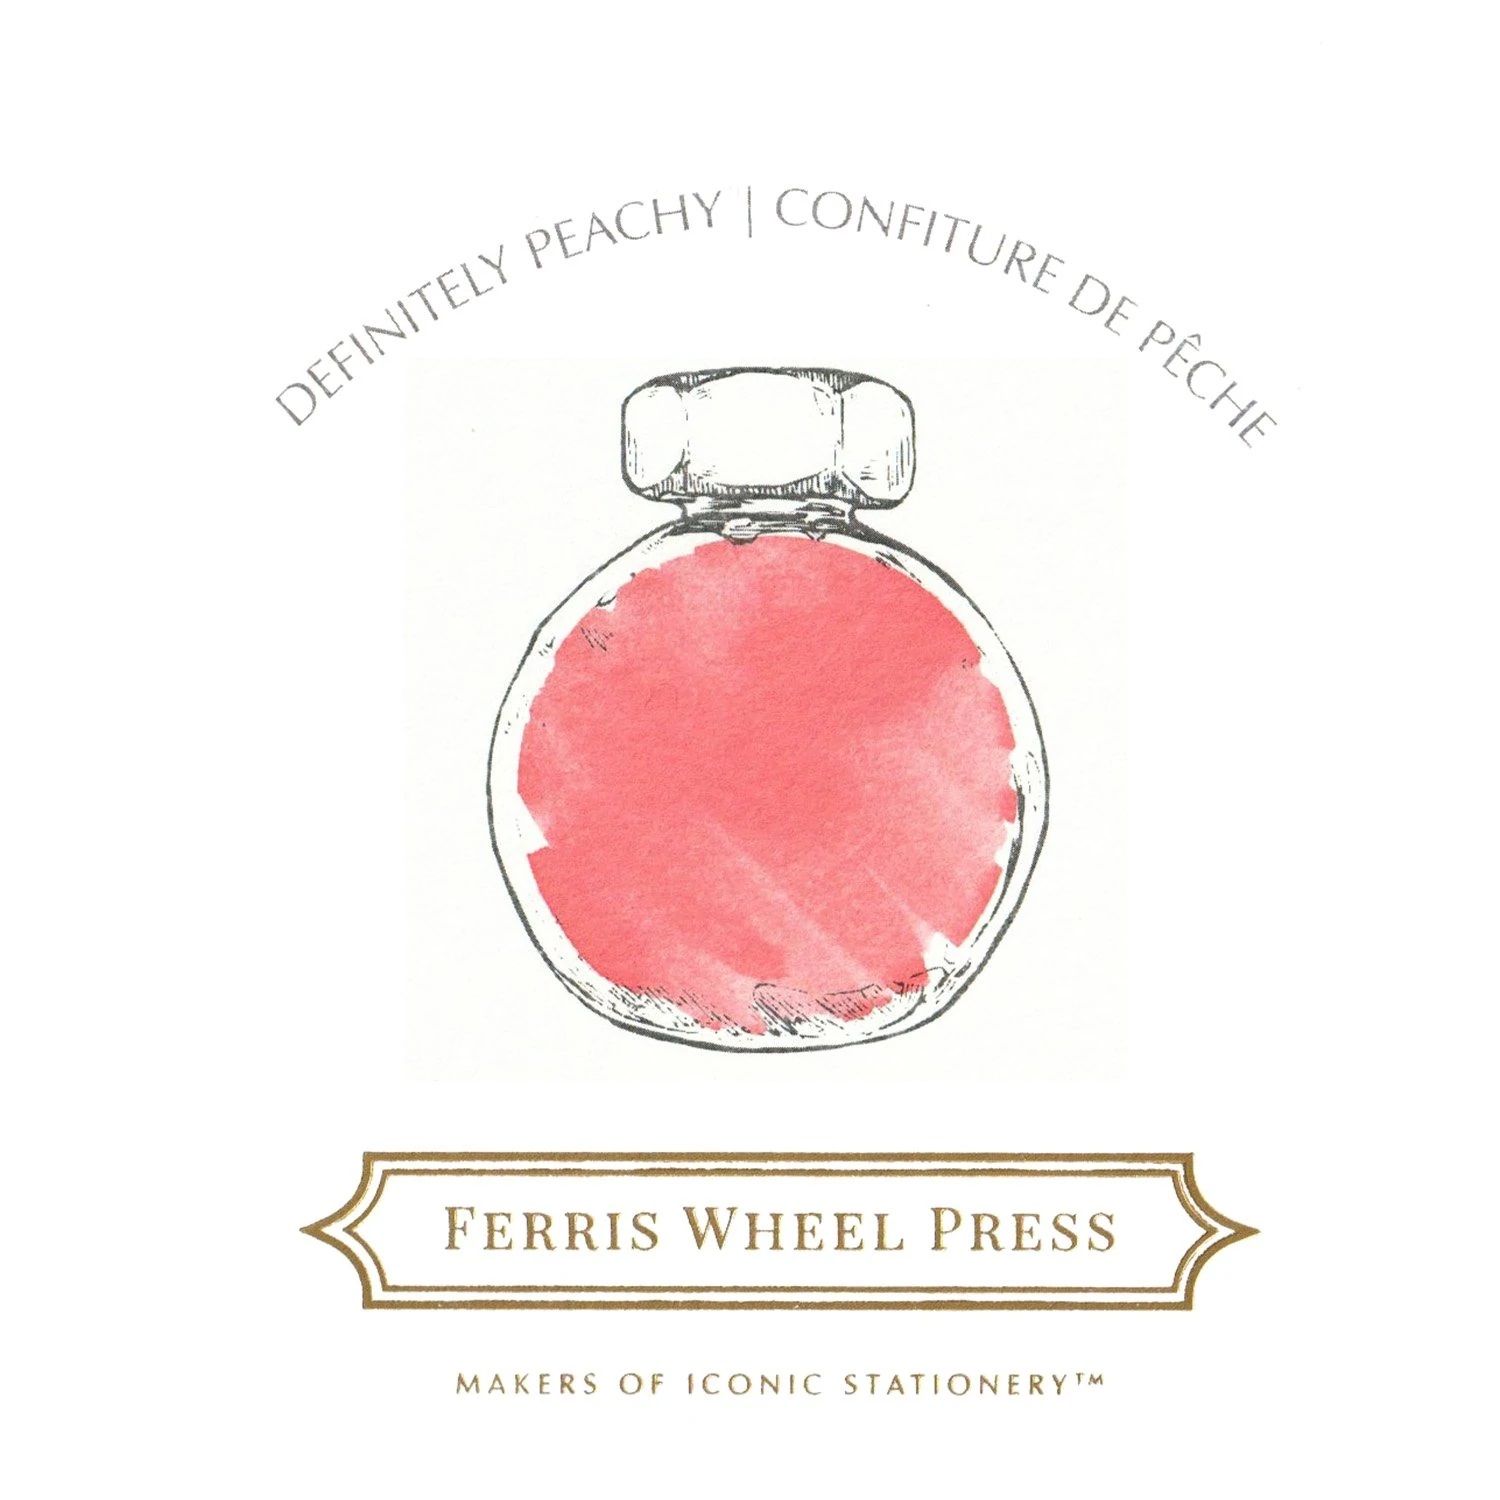 Ferris Wheel Press 85ml Bottled Fountain Pen Inks - Definitely Peachy